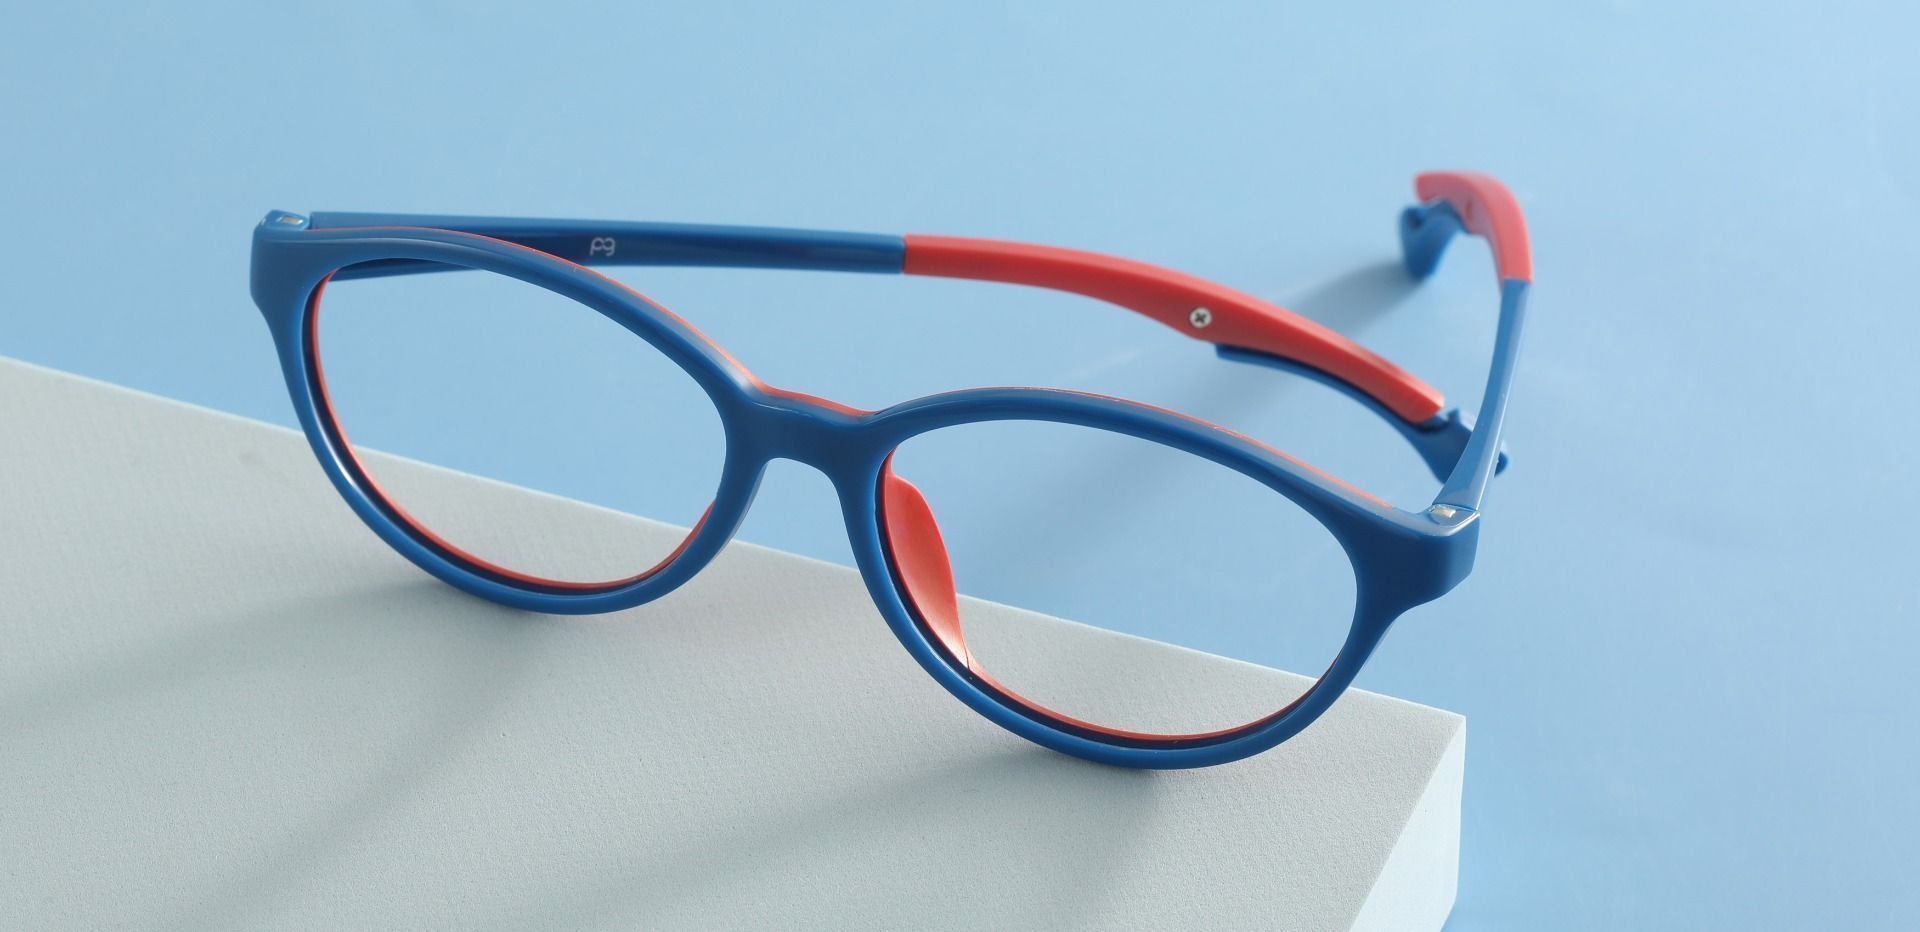 Desert Oval Prescription Glasses - Blue